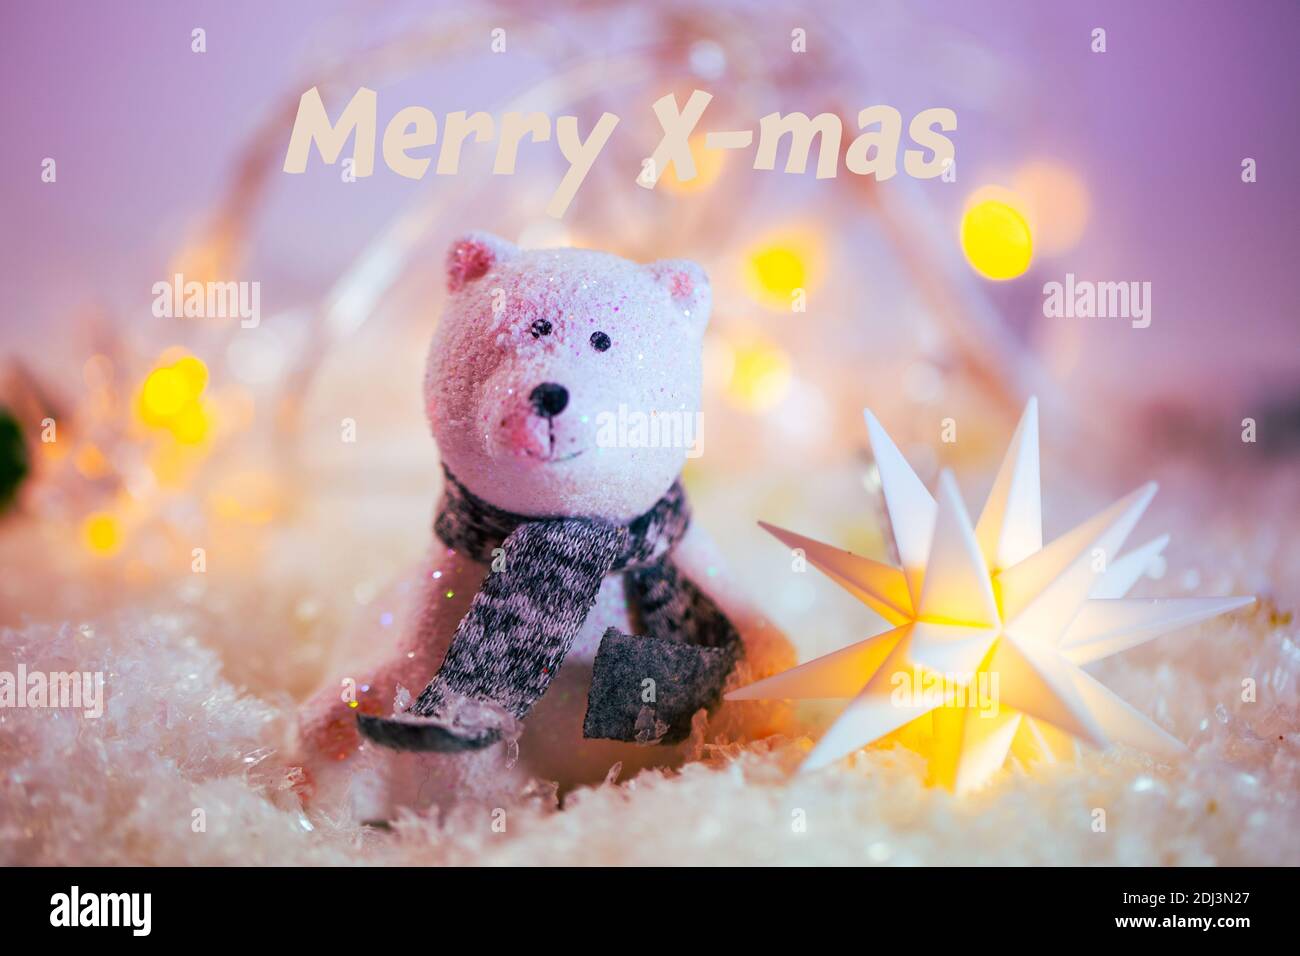 Weihnachten, Eisbär im Schnee mit Weihnachtsbaumkugeln, Weihnachtskarte, Frohe Weihnachten Stockfoto